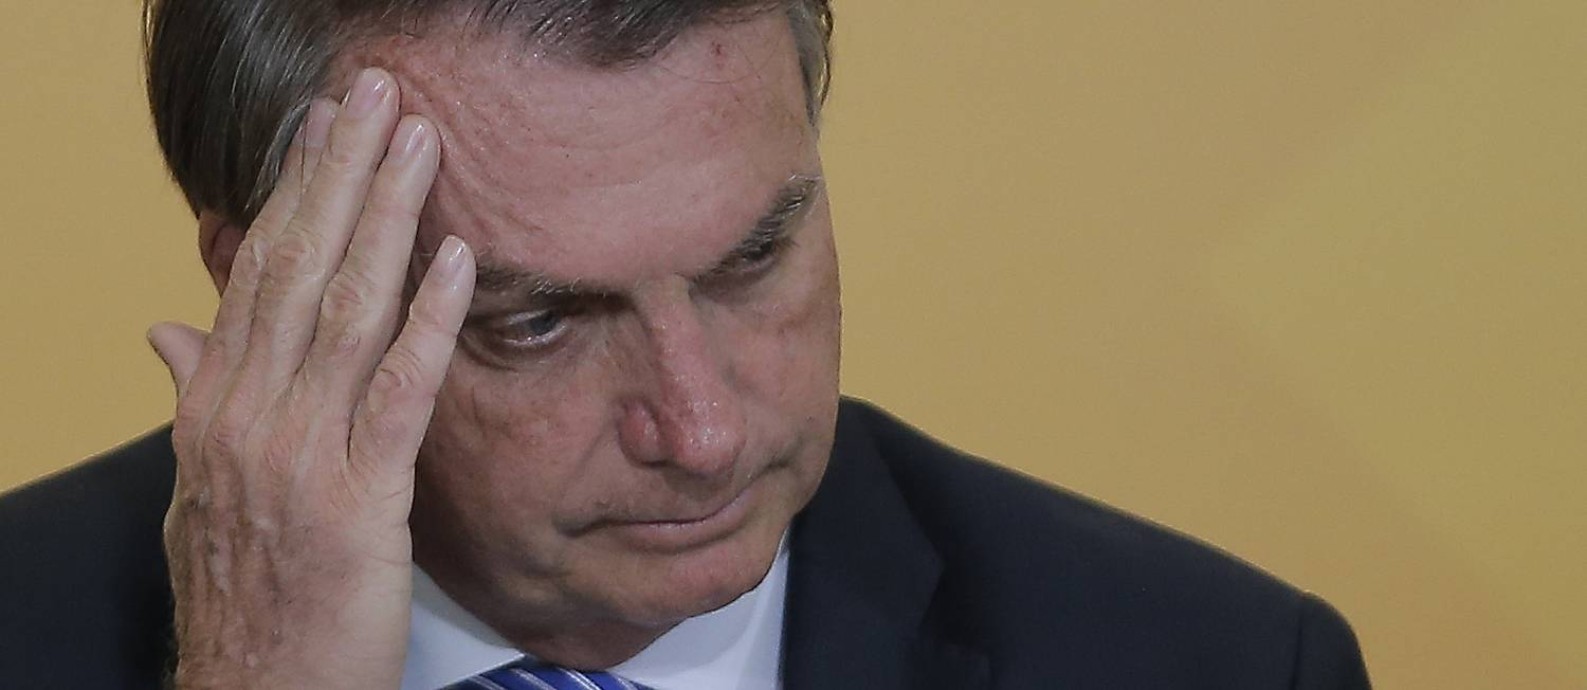 Com a queda de sua popularidade, Bolsonaro passou a investir em temas que possam render dividendos eleitorais Foto: Cristiano Mariz / Agência O Globo/10-11-2021